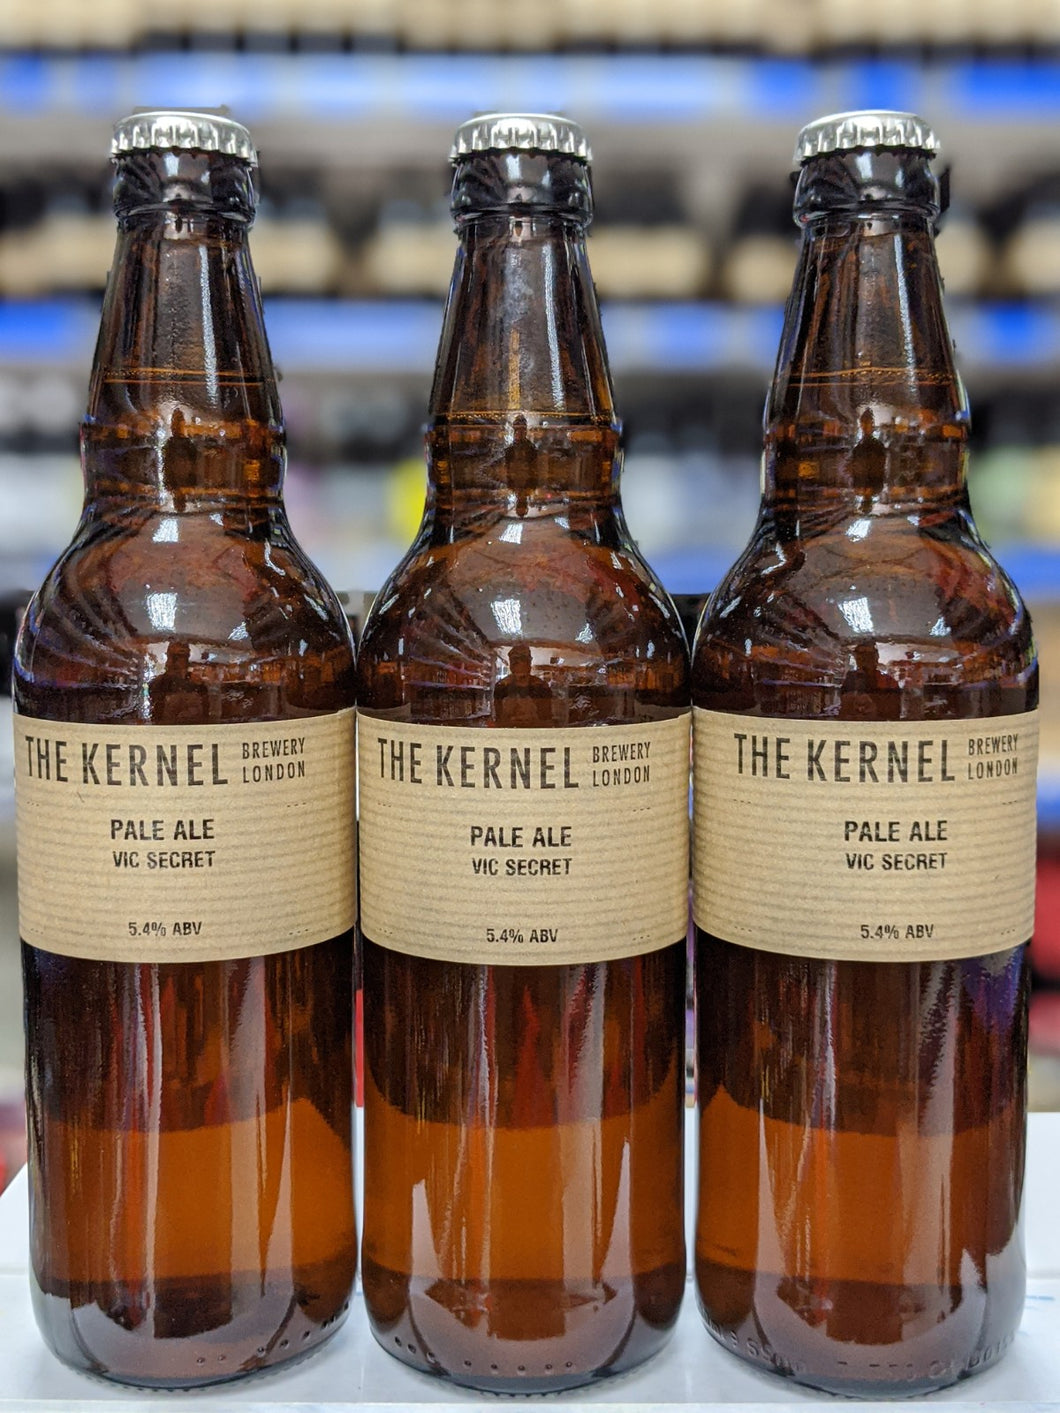 Pale Ale Vic Secret - The Kernel Brewery - Pale Ale, 5.4%, 500ml Bottle